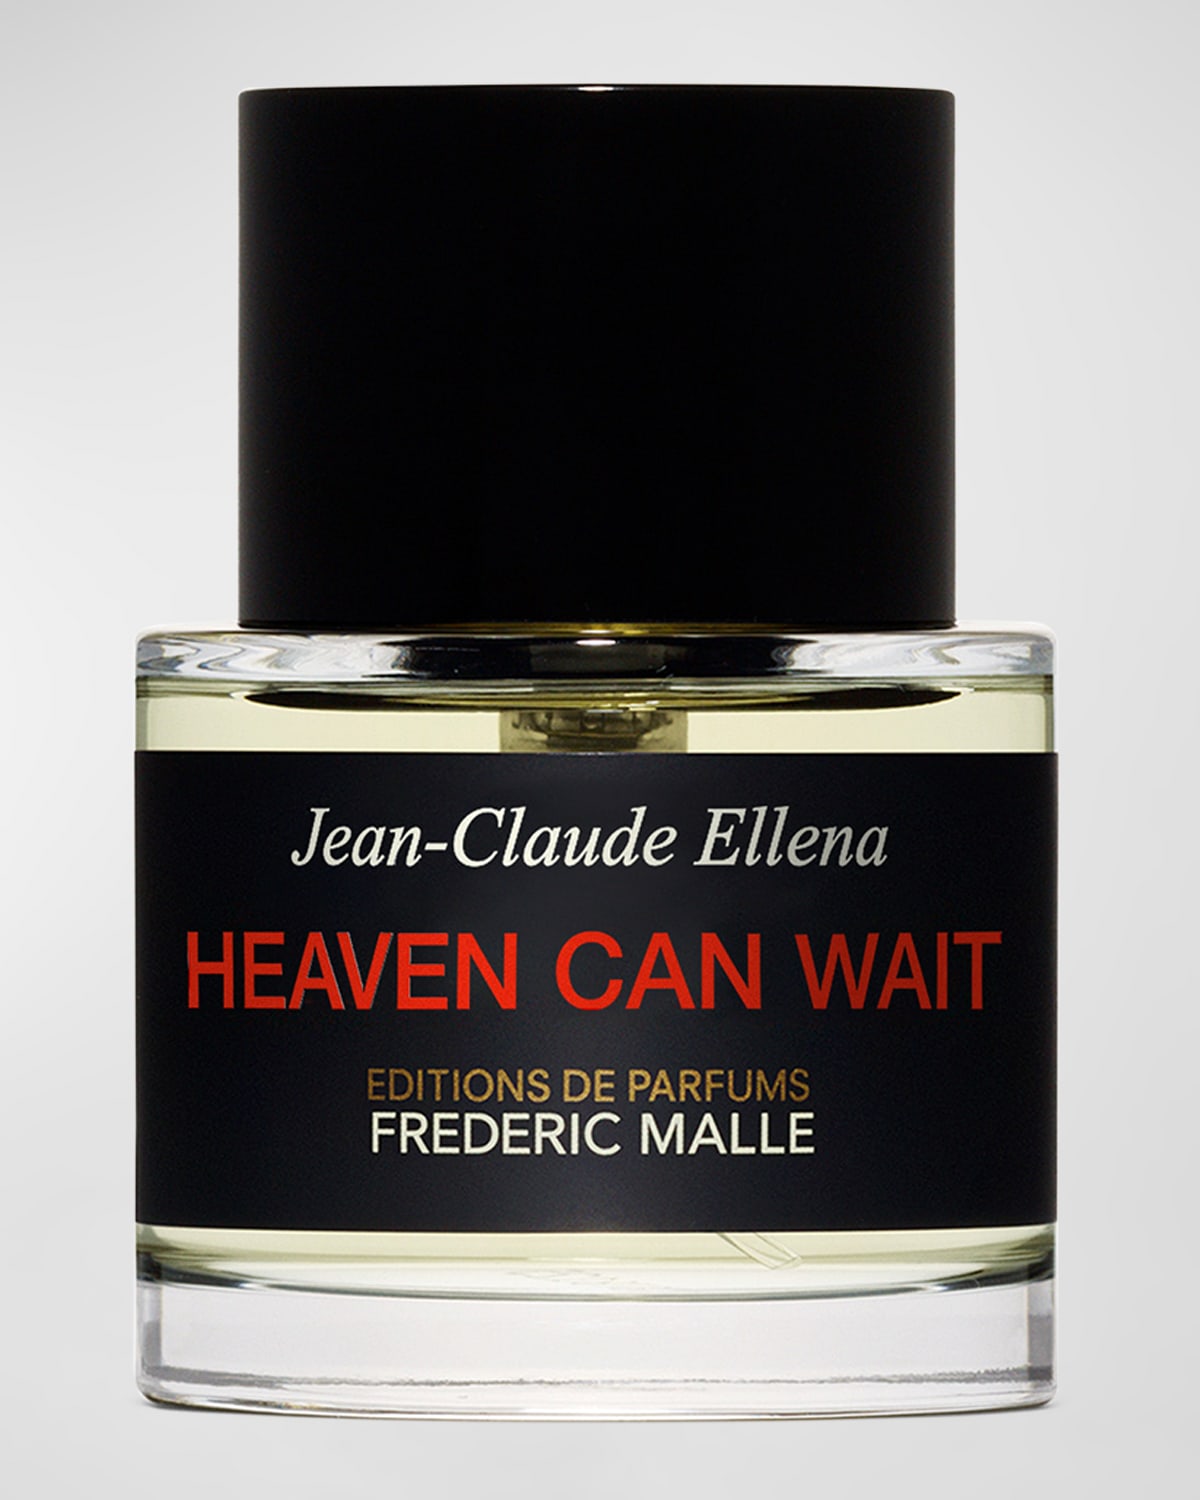 Shop Editions De Parfums Frederic Malle Heaven Can Wait Perfume, 1.7 Oz.